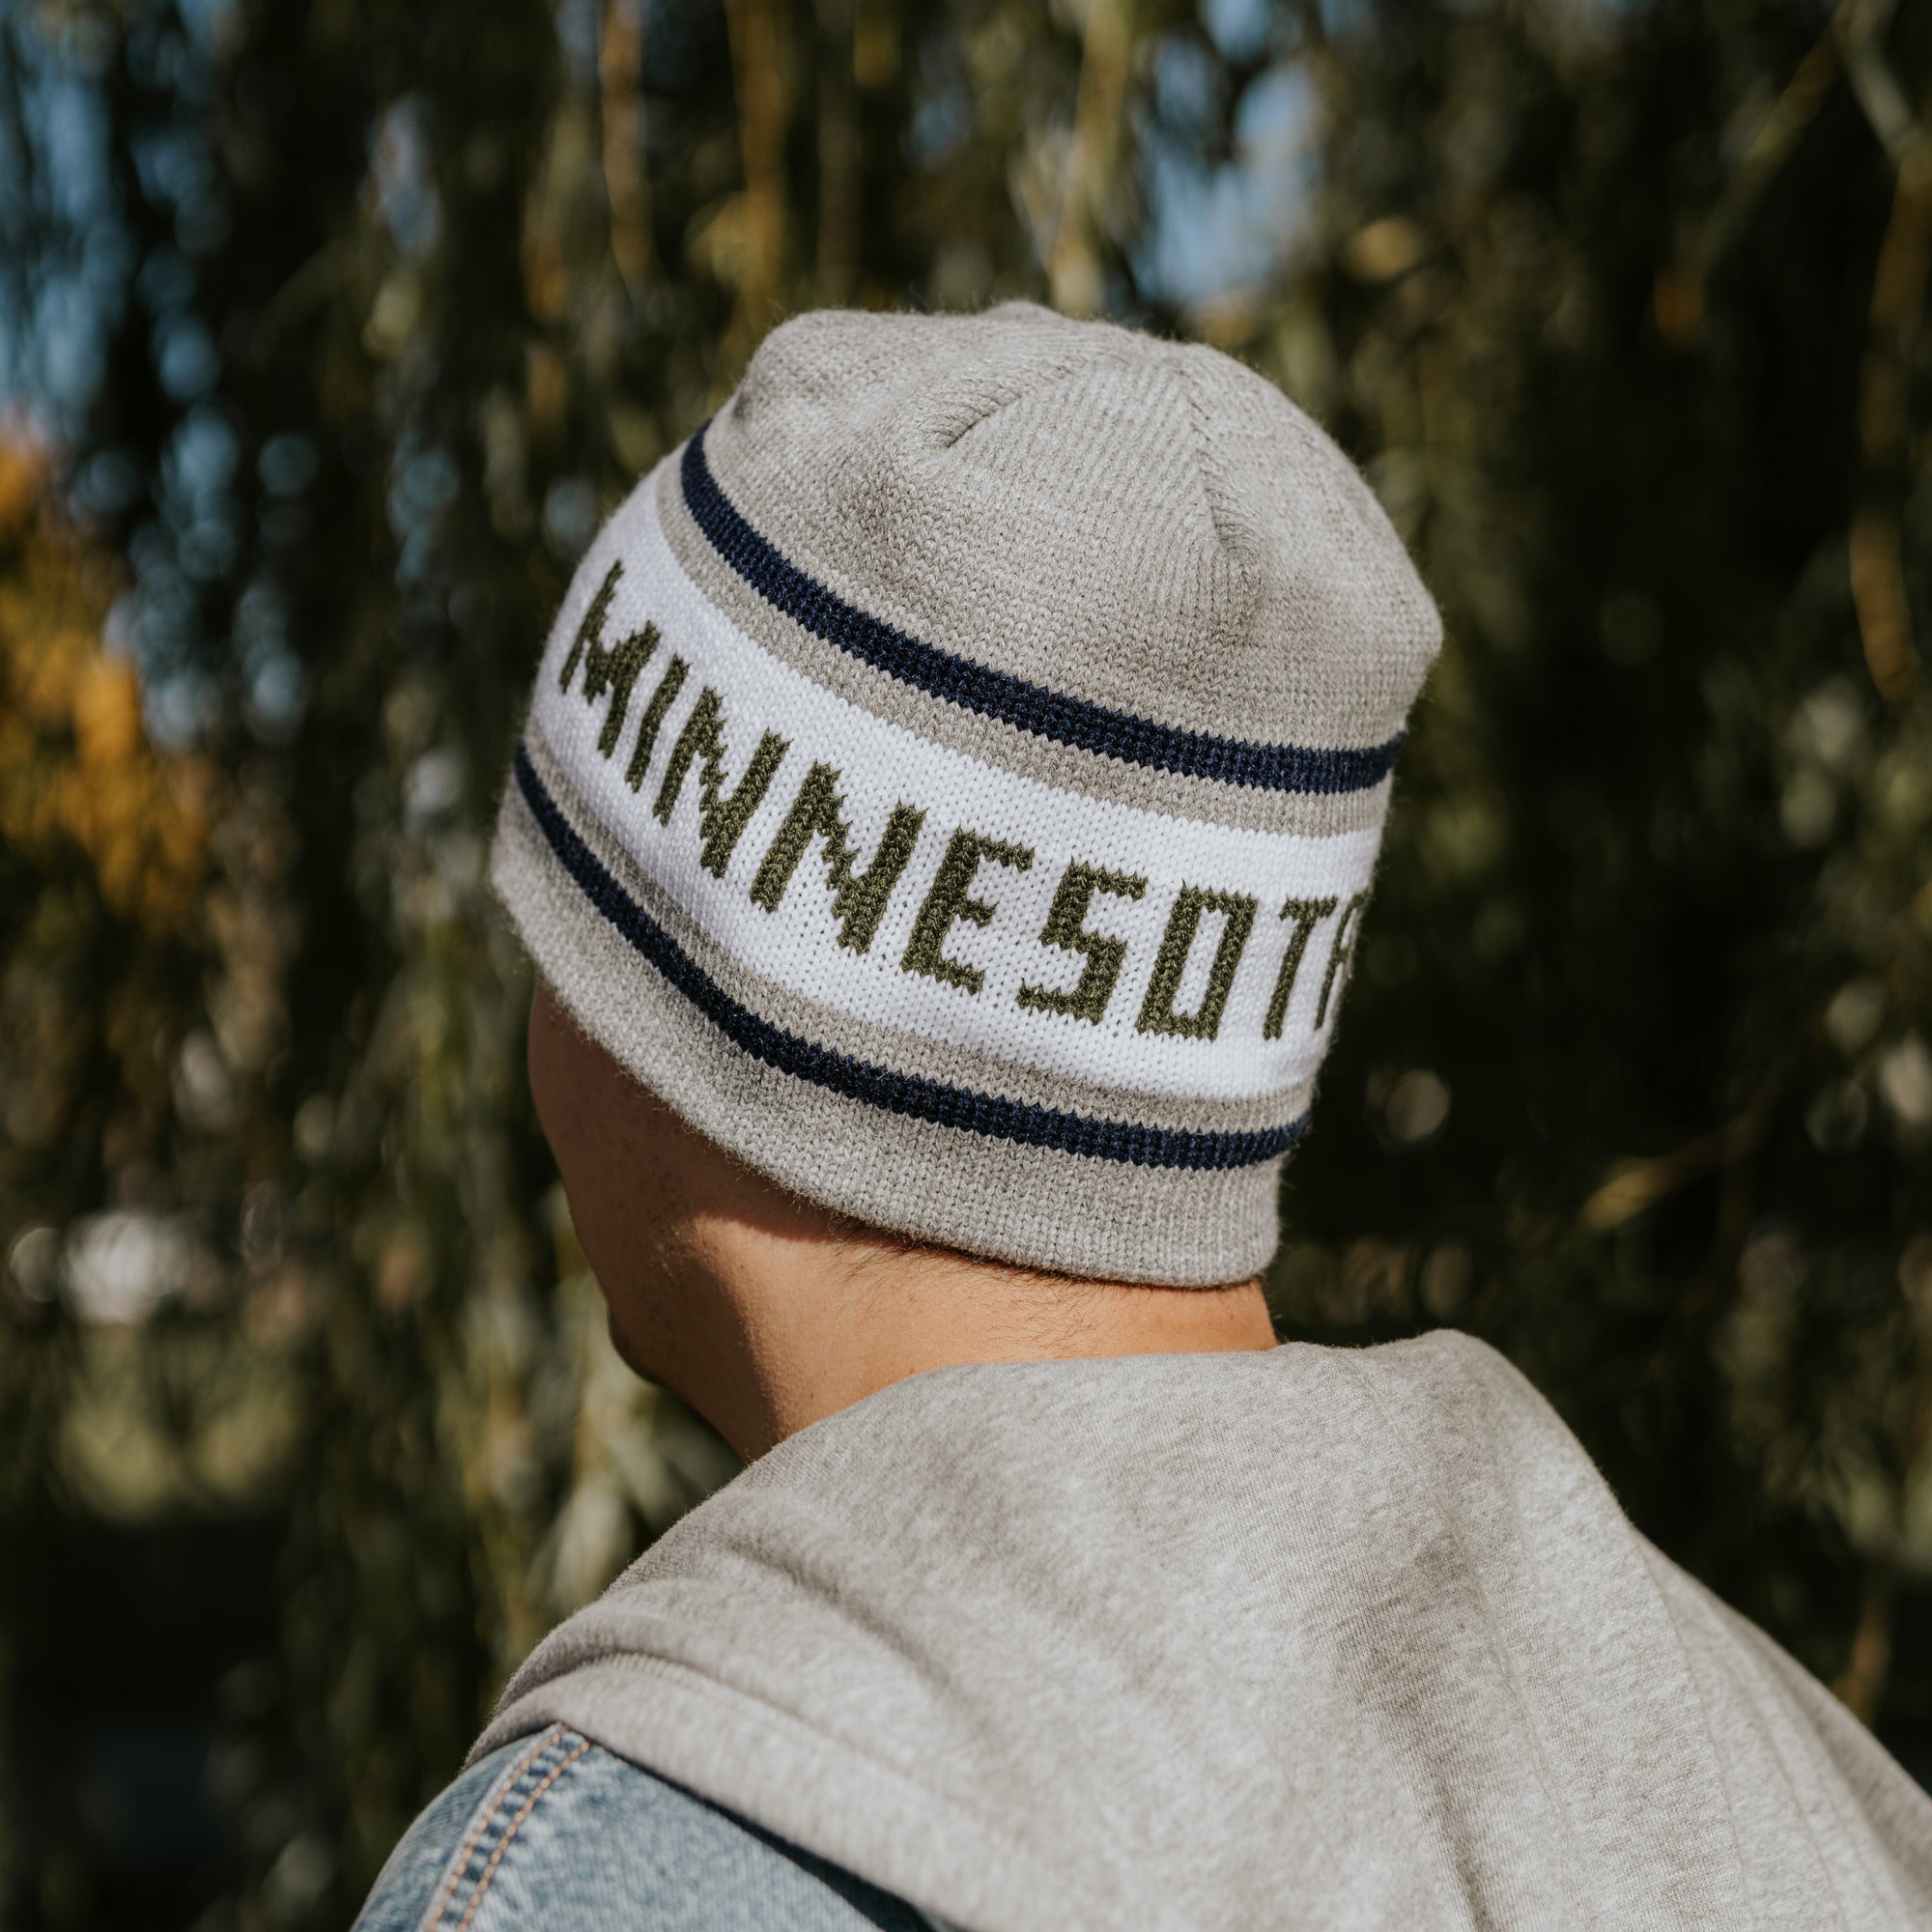 Minnesota Knit Beanie | Minnesota Winter Hat